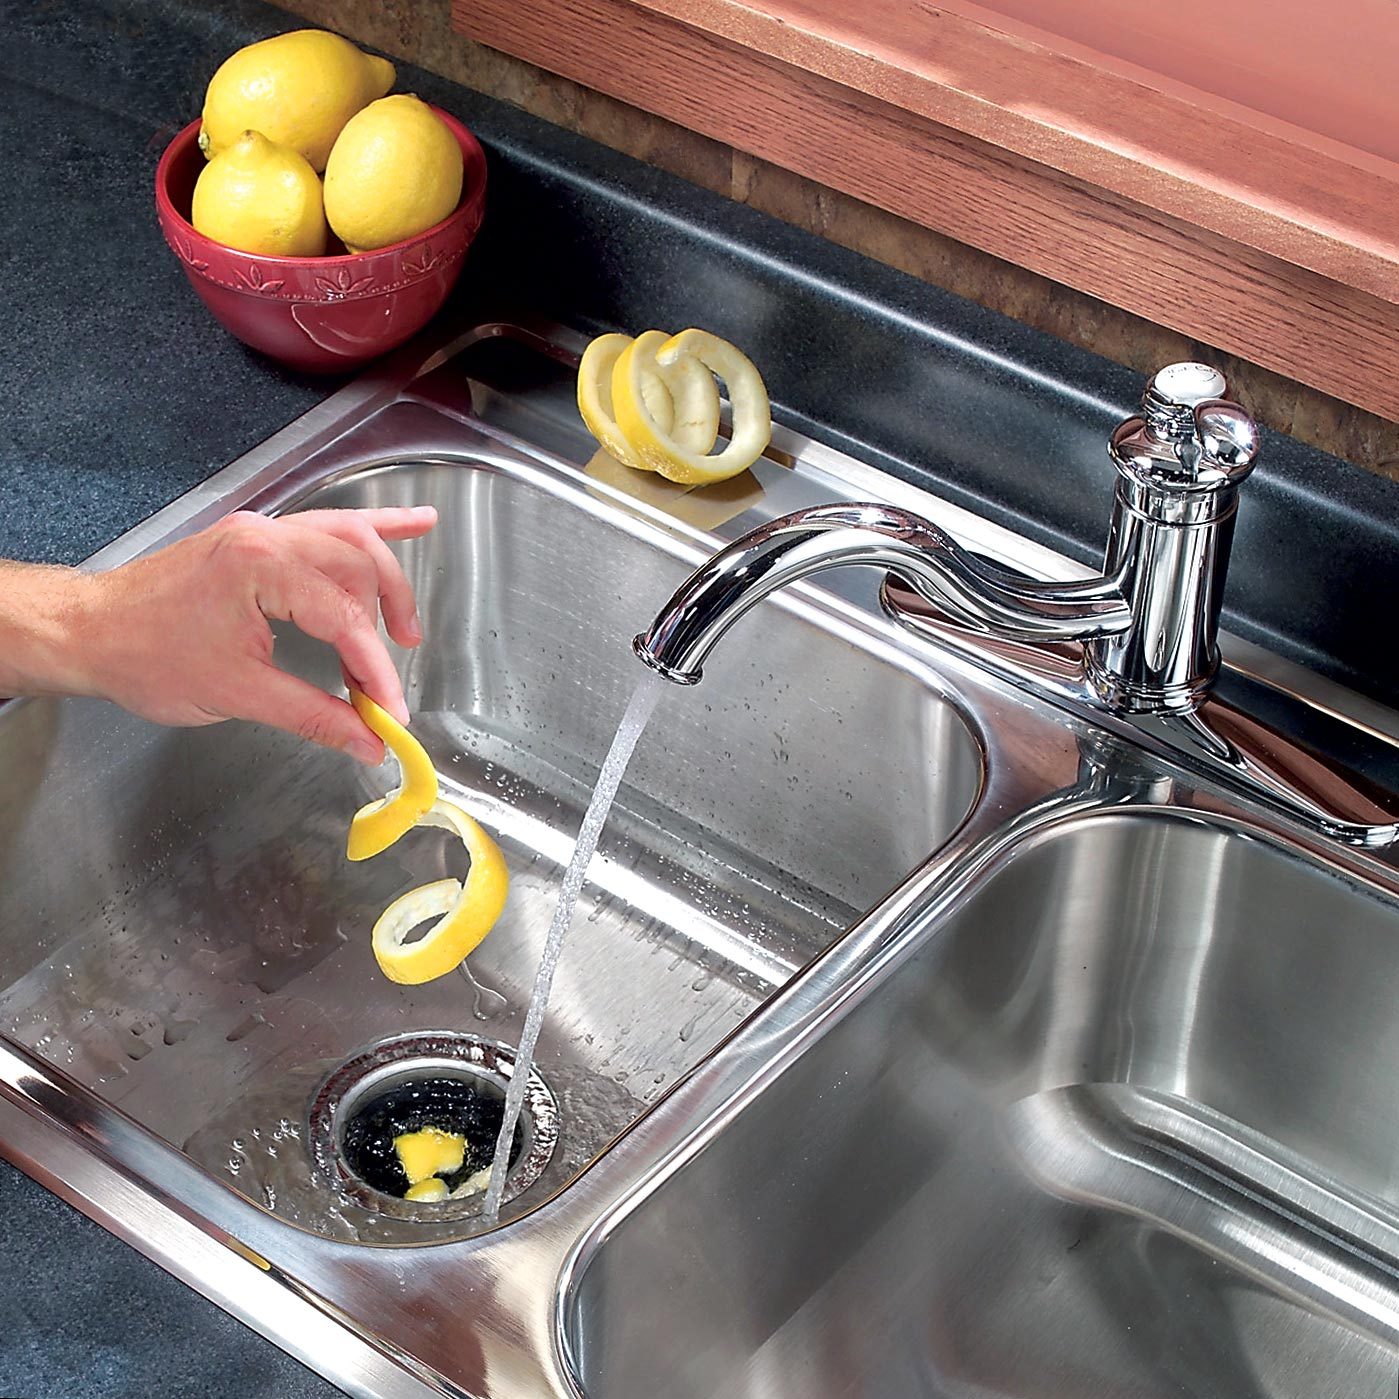 Lemon peels in kitchen sink